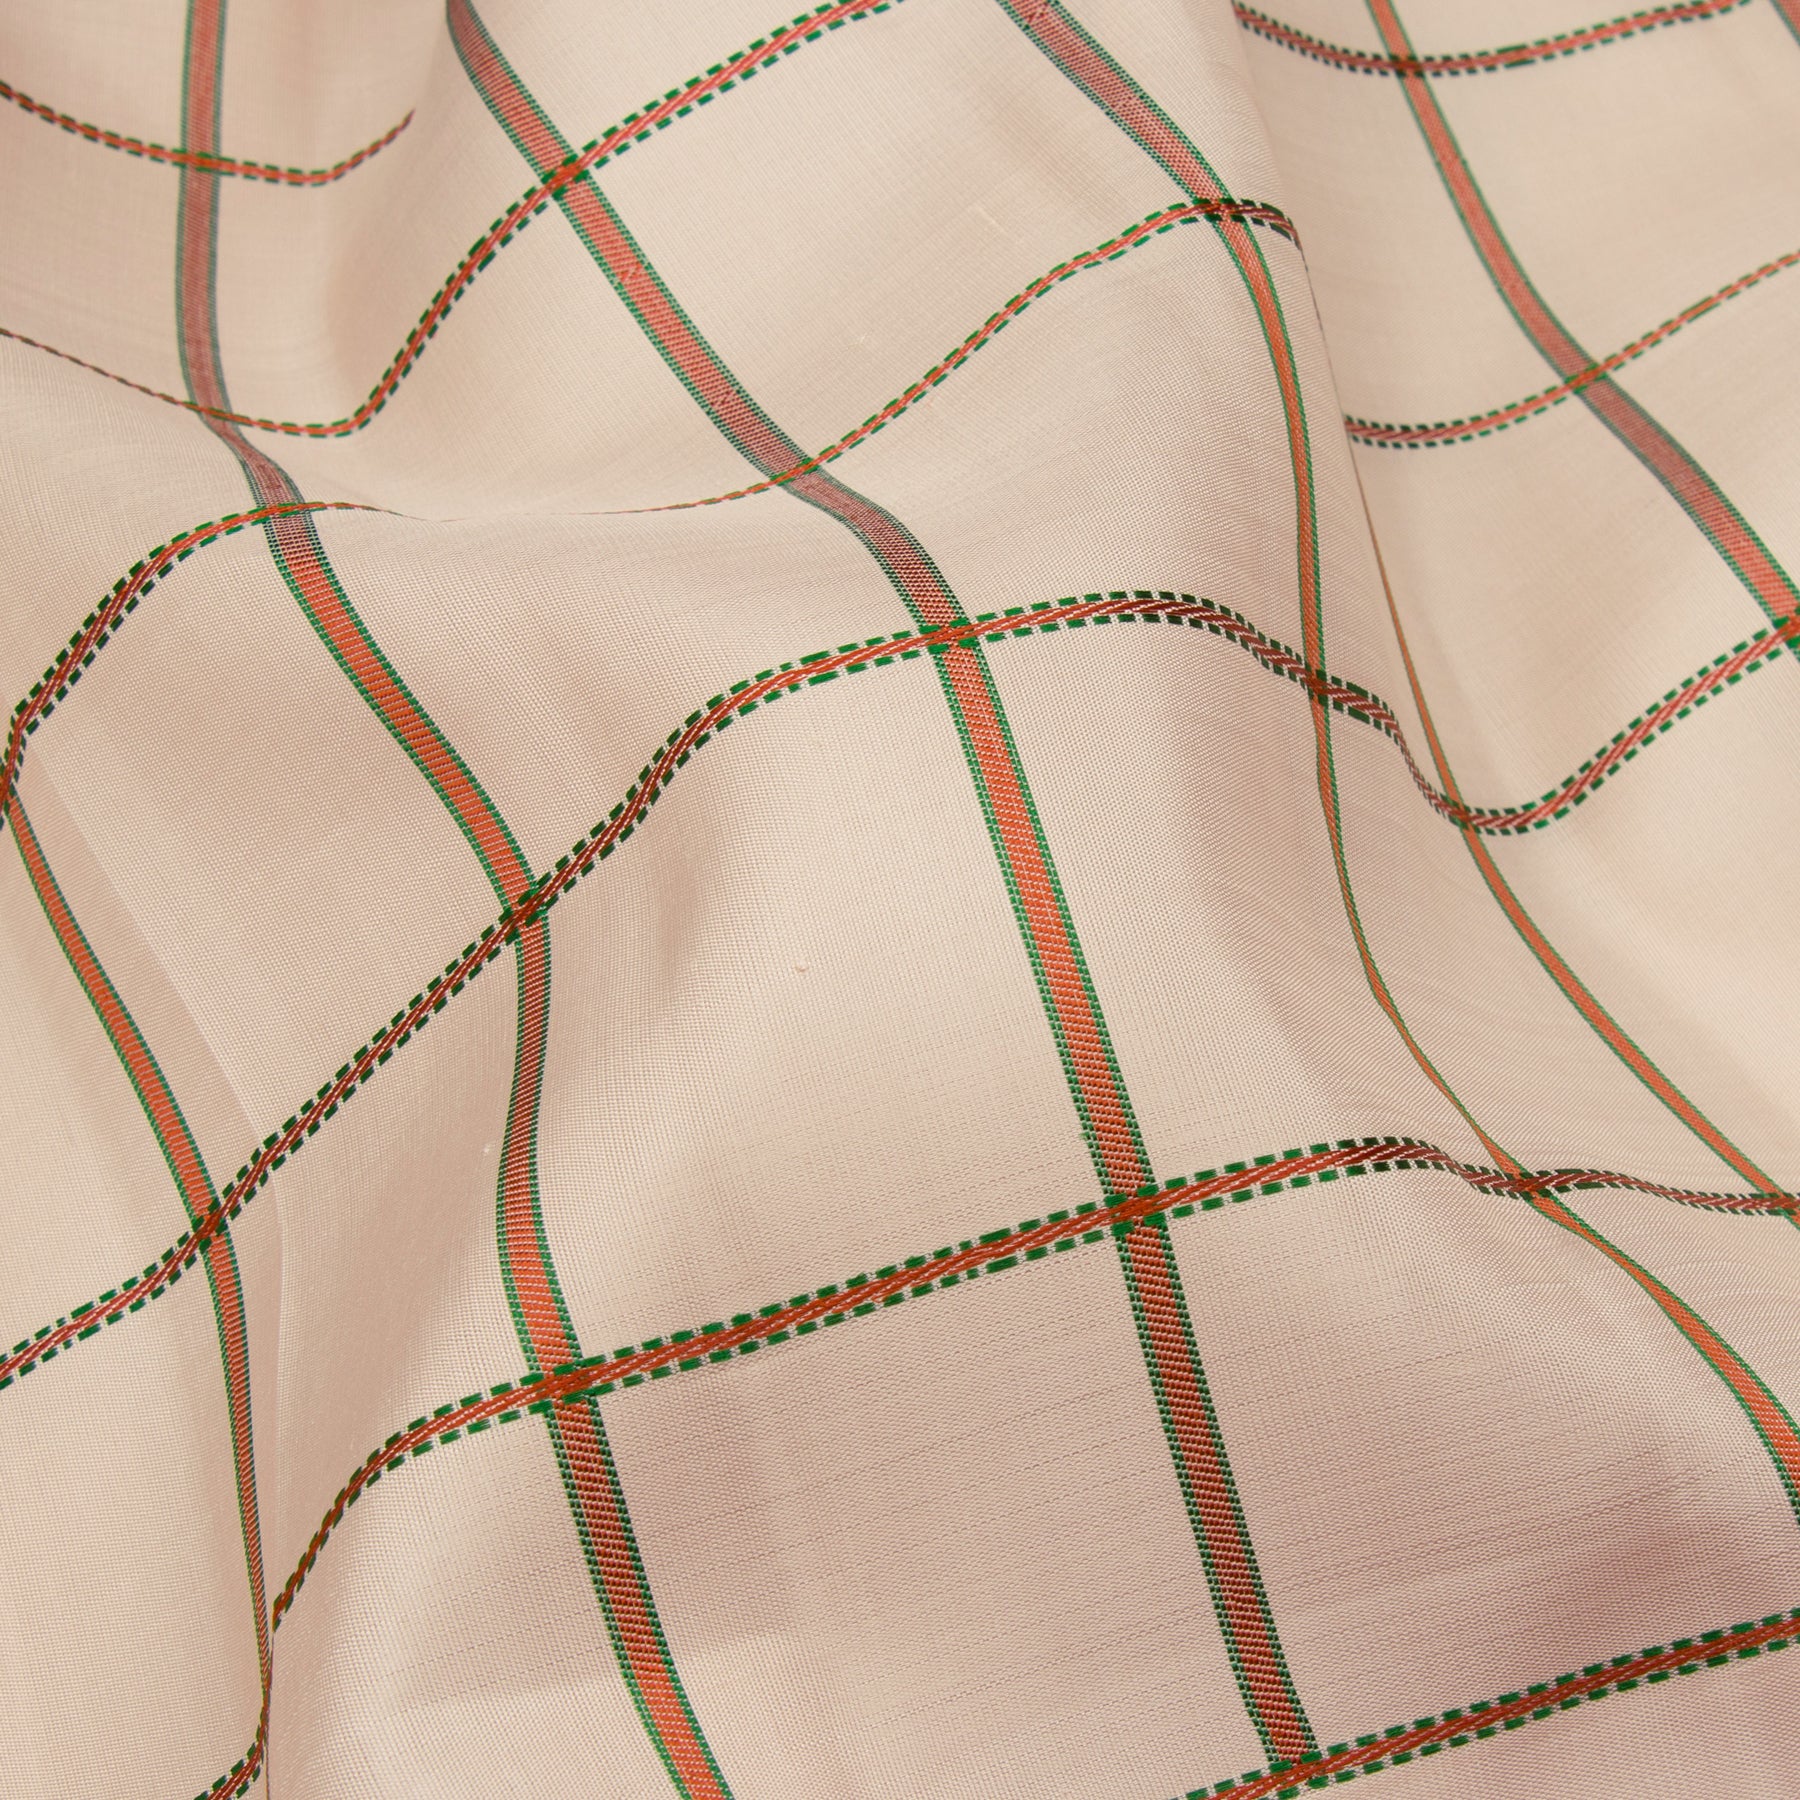 Kanakavalli Kanjivaram Silk Sari 23-040-HS001-10315 - Fabric View